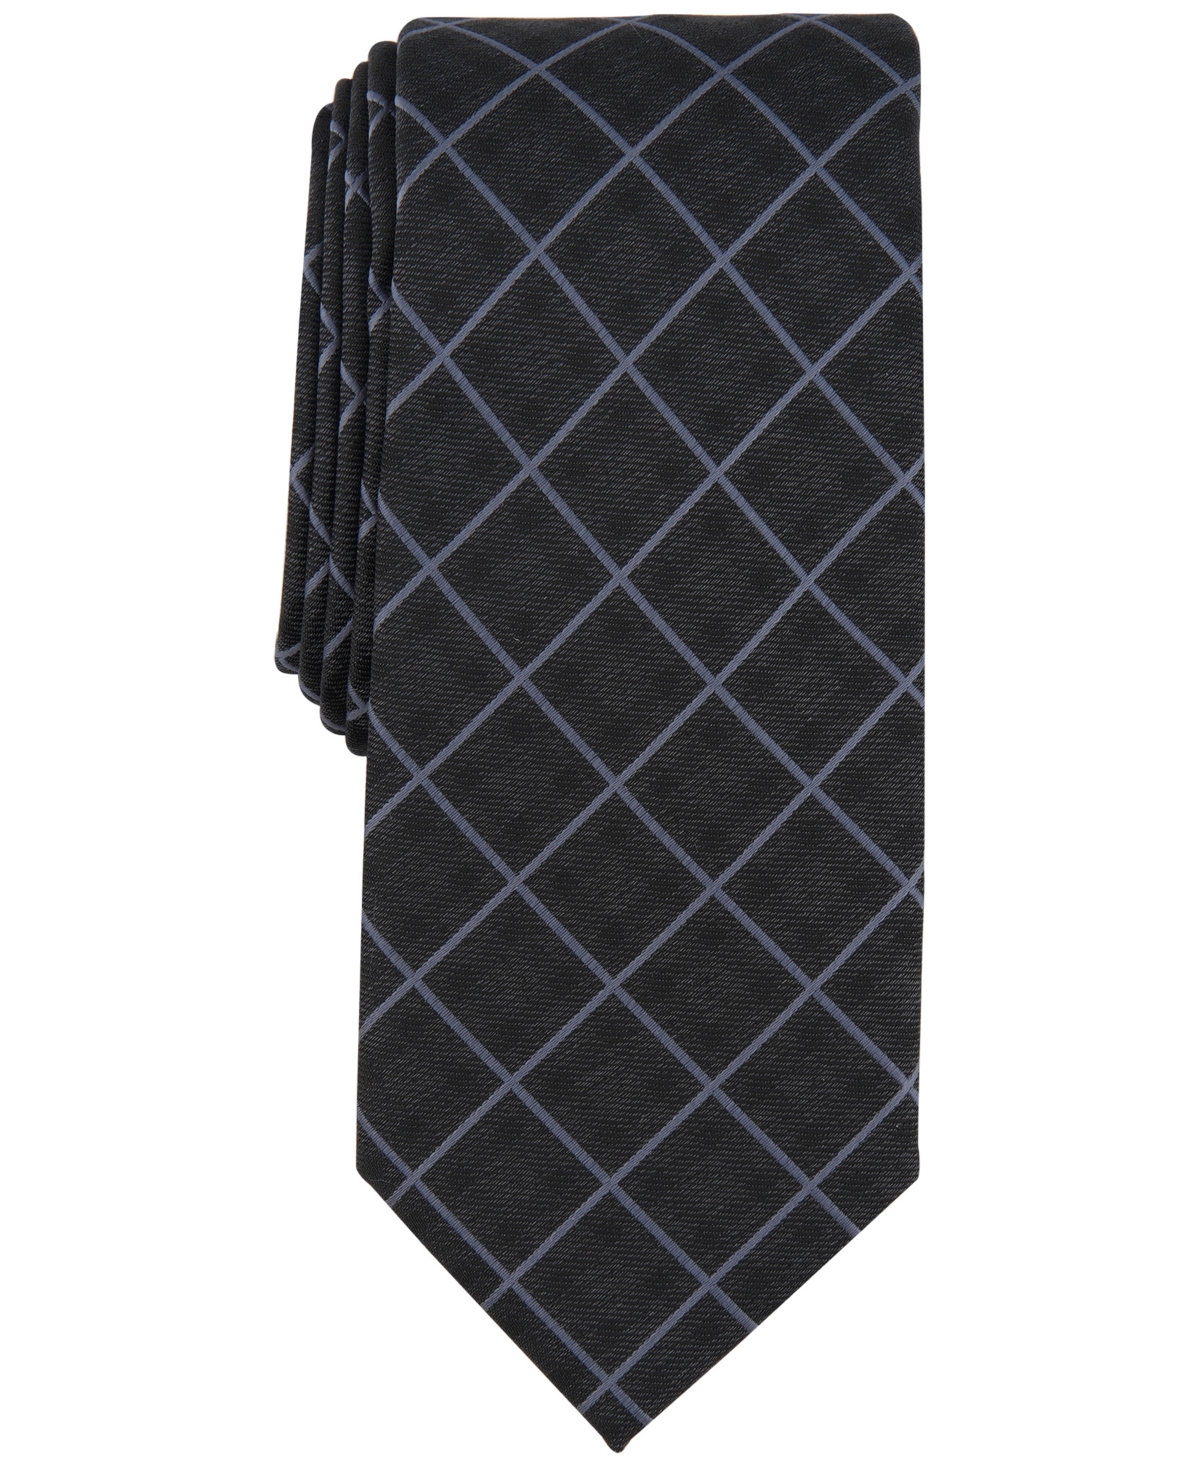 Men's Mathison Grid Slim Tie, Created for Macy's - Black